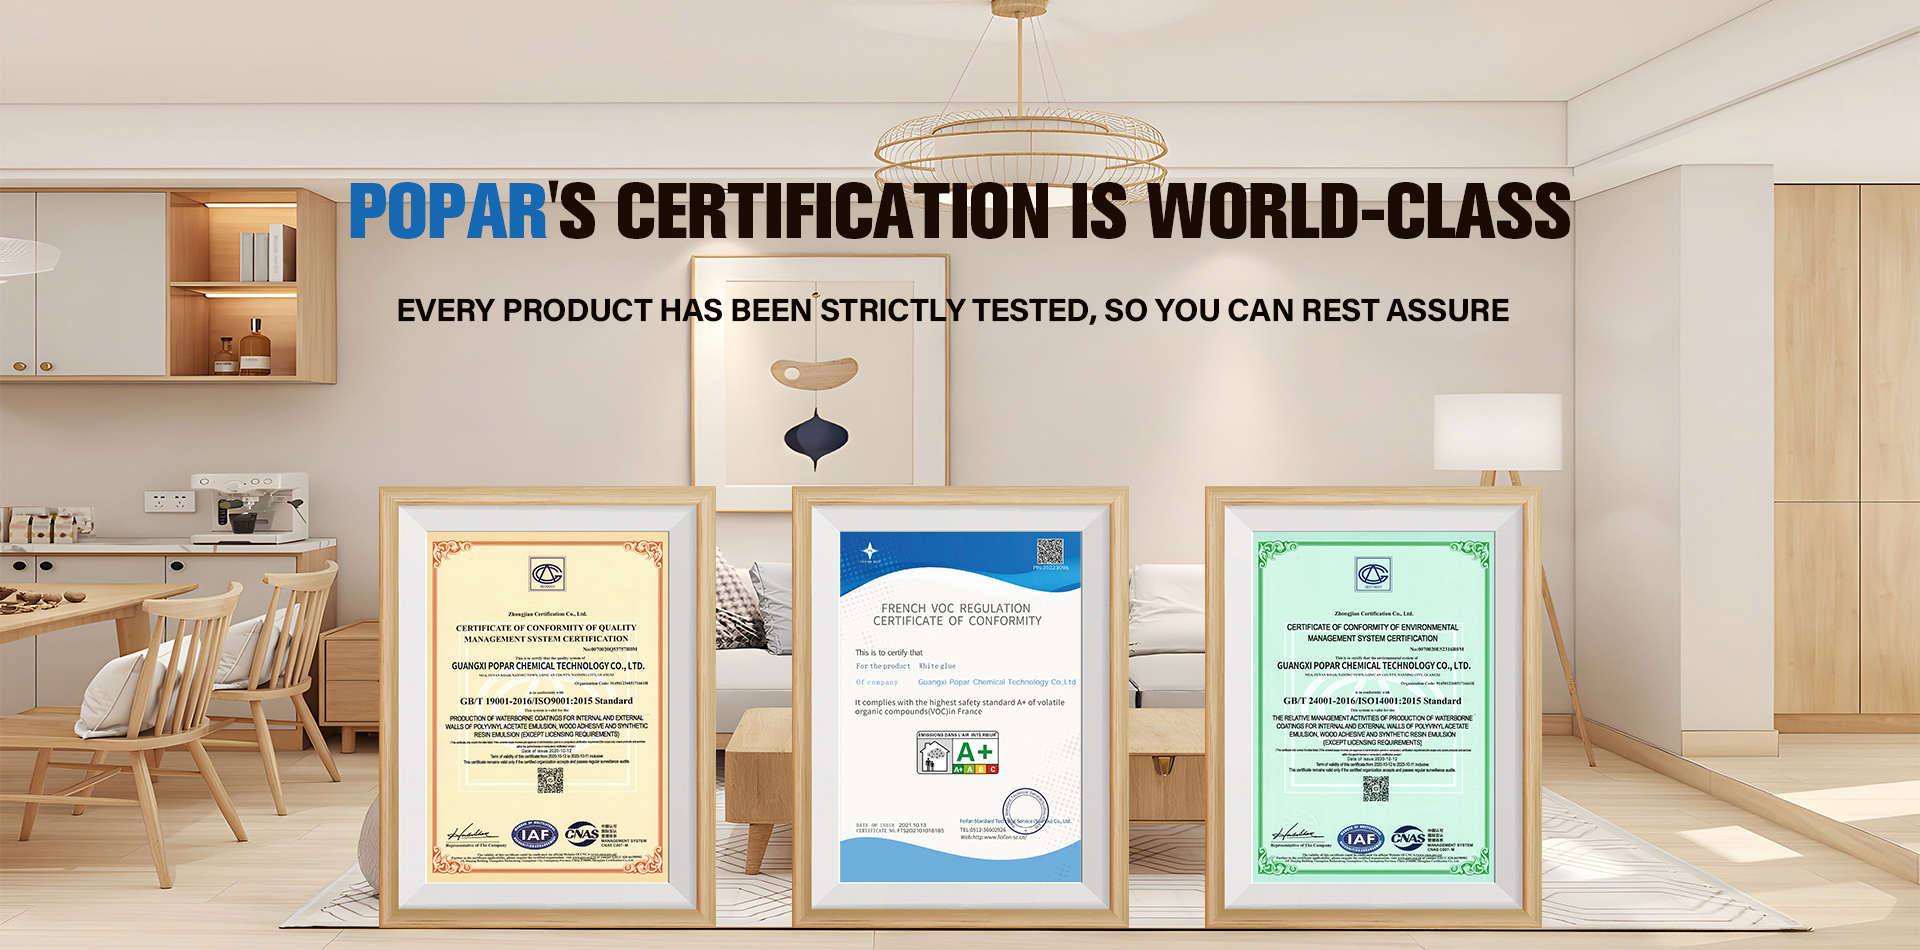 La certificación de Popar es de clase mundial